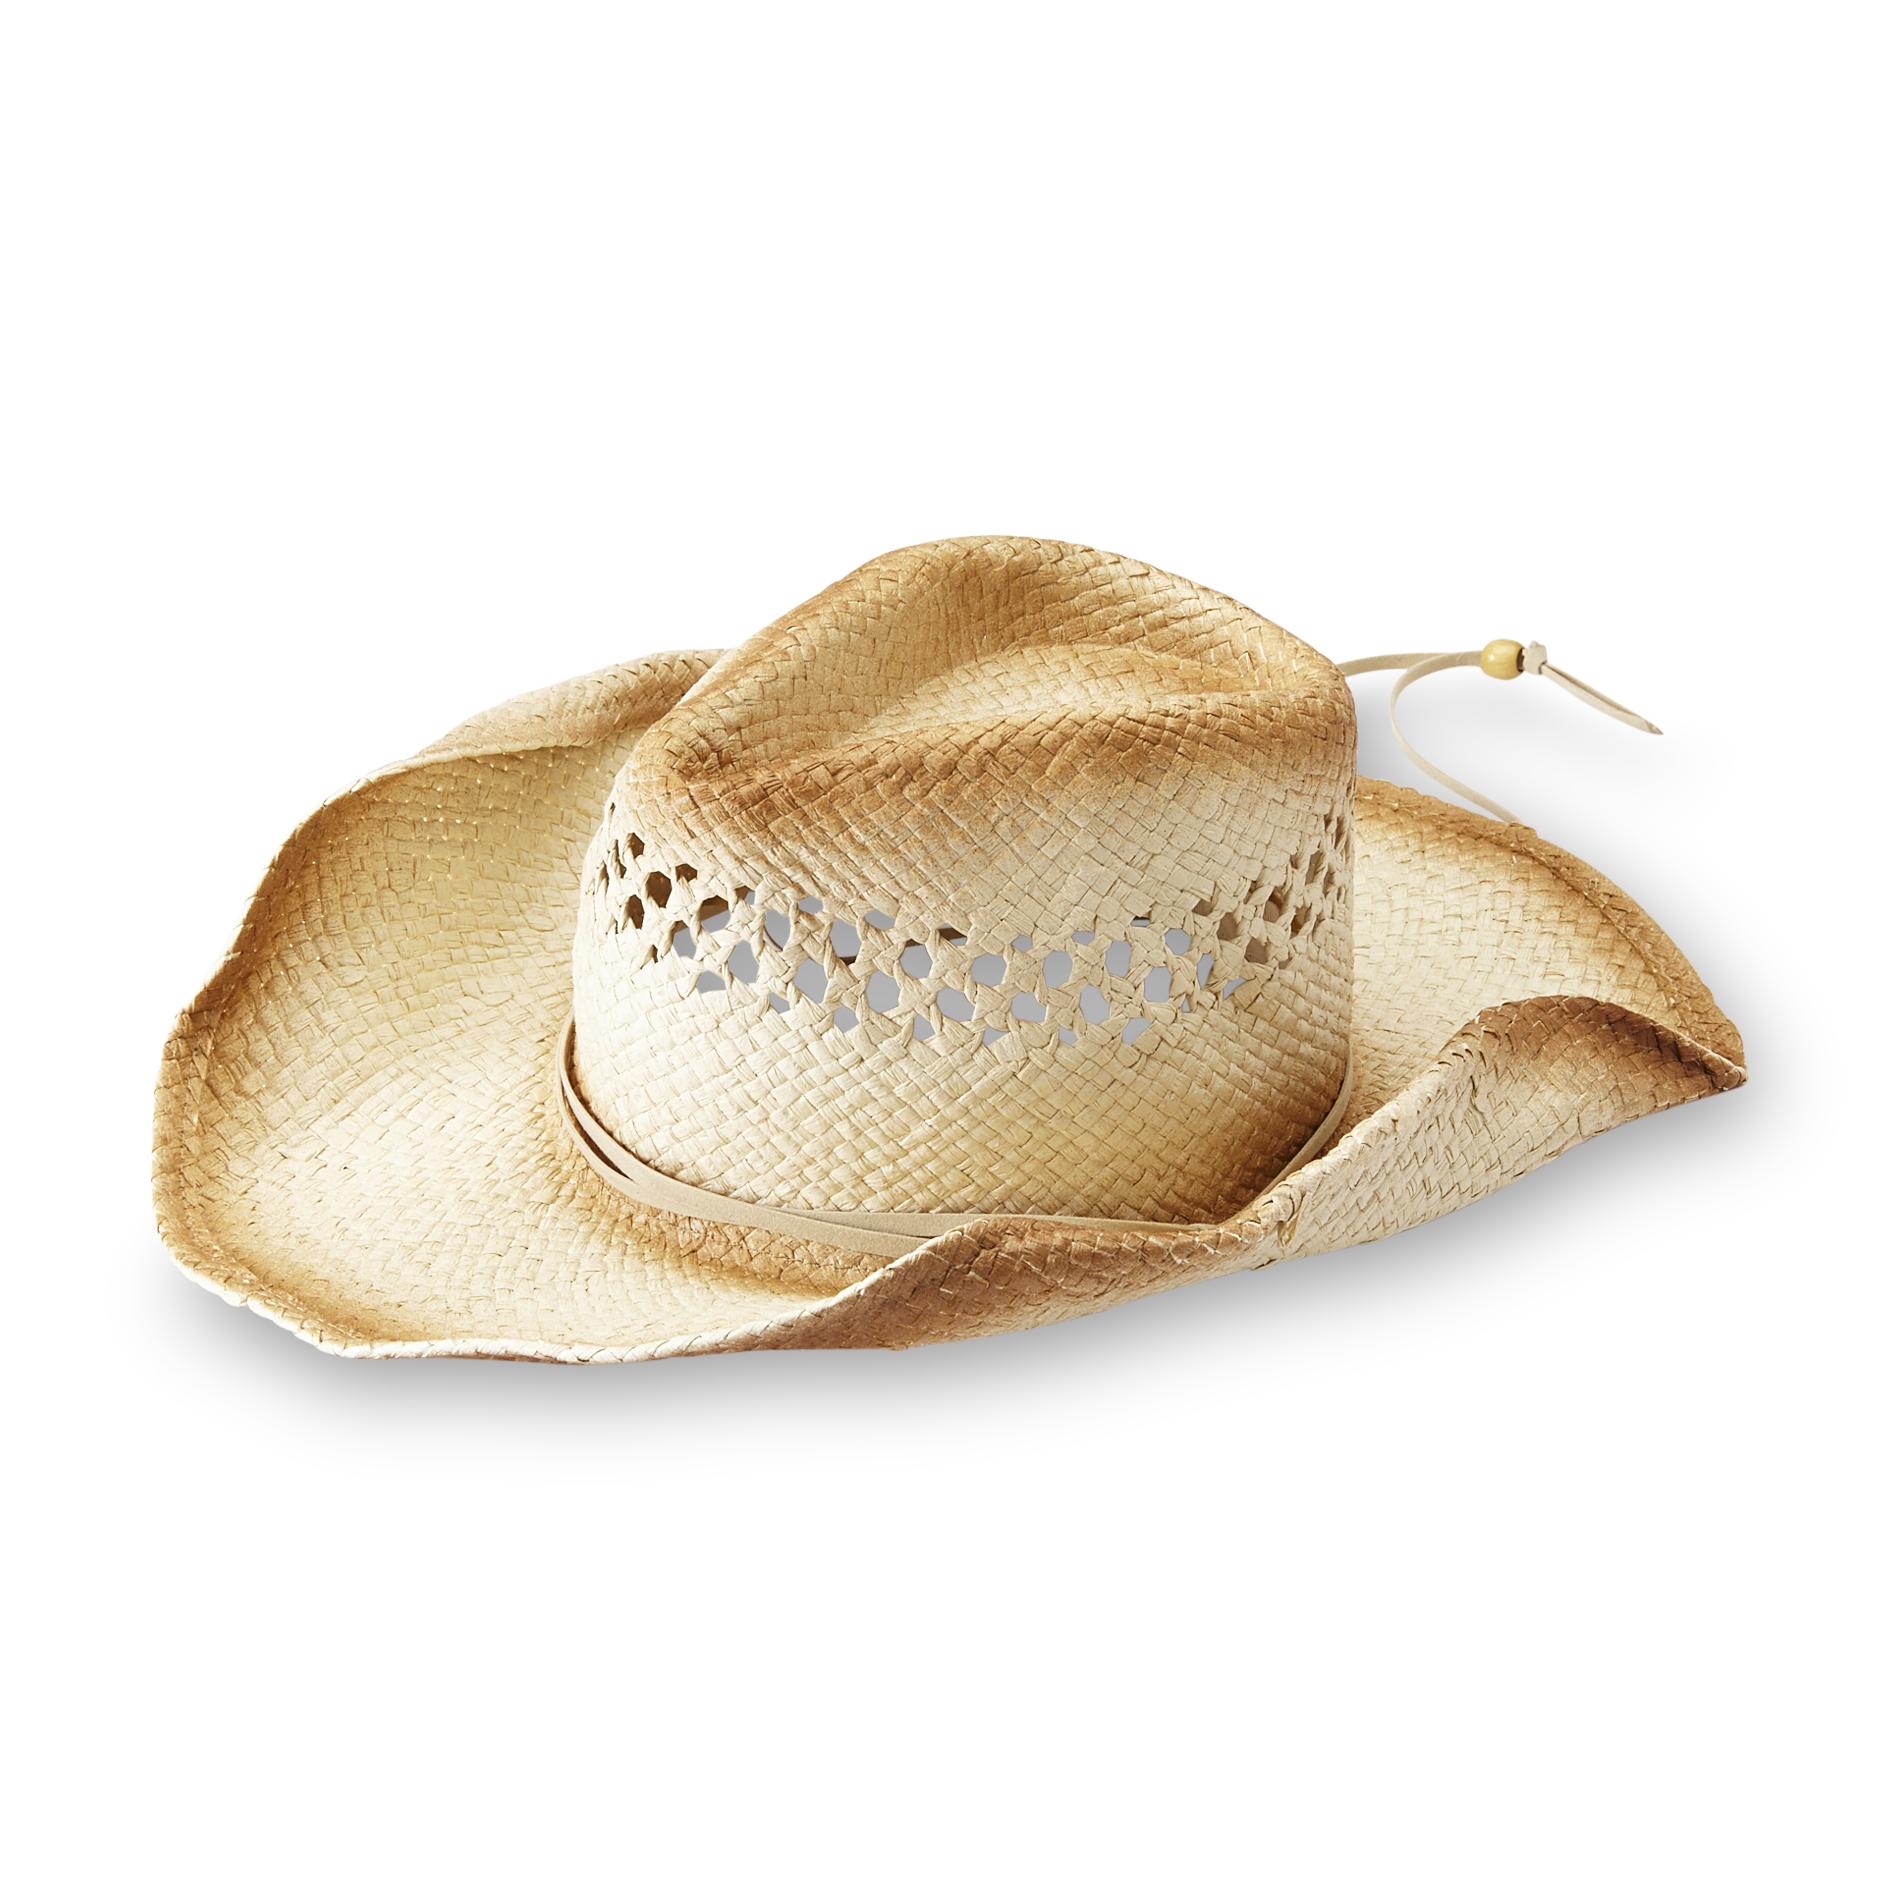 Joe Boxer Women's Straw Cowboy Hat - Distressed